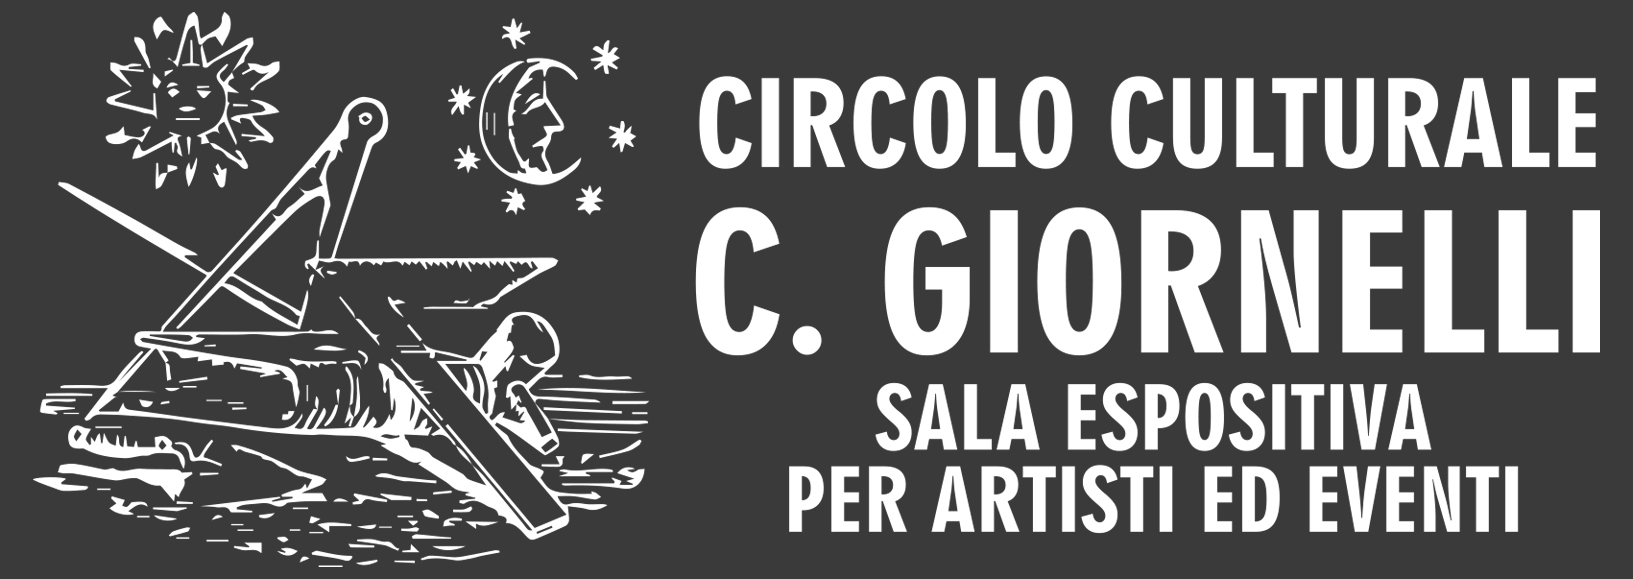 logo_galleria